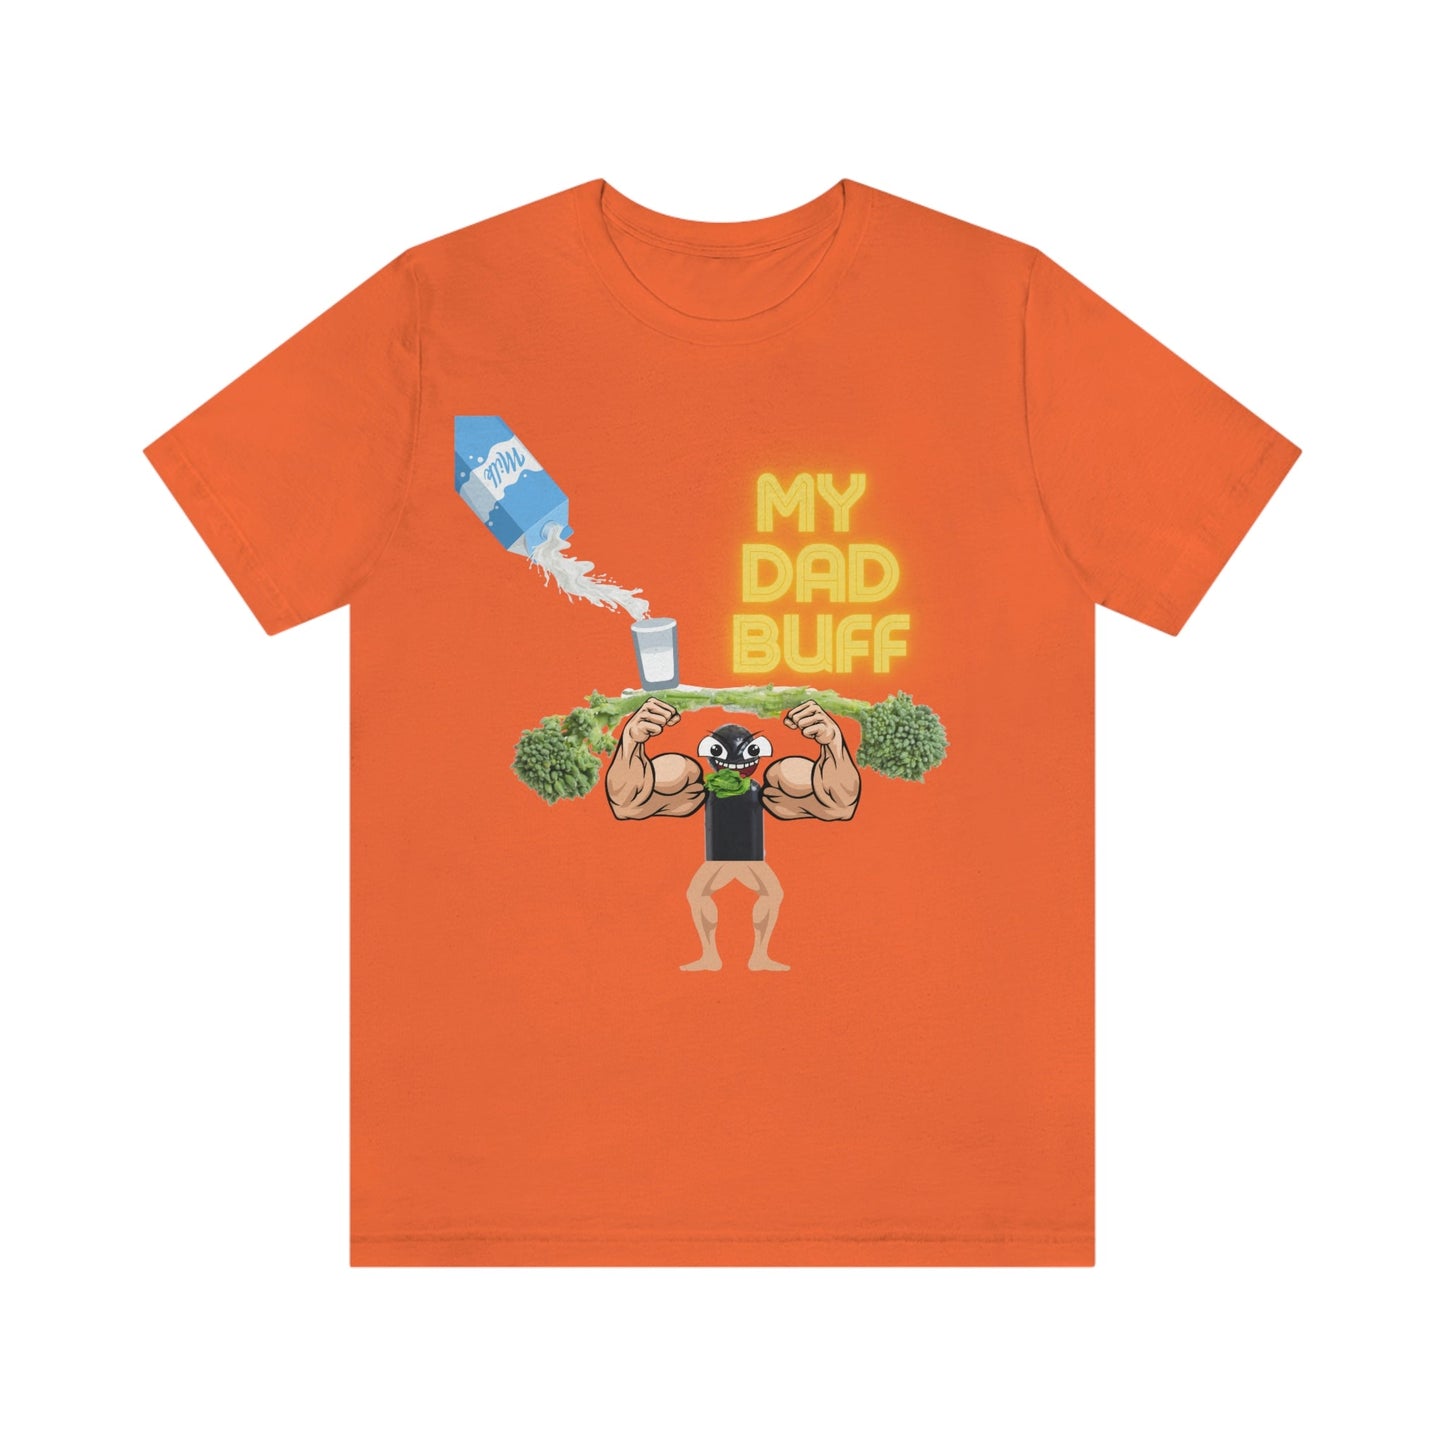 My Dad Buff Graphic T-Shirt-T-Shirt-Orange-S-mysticalcherry